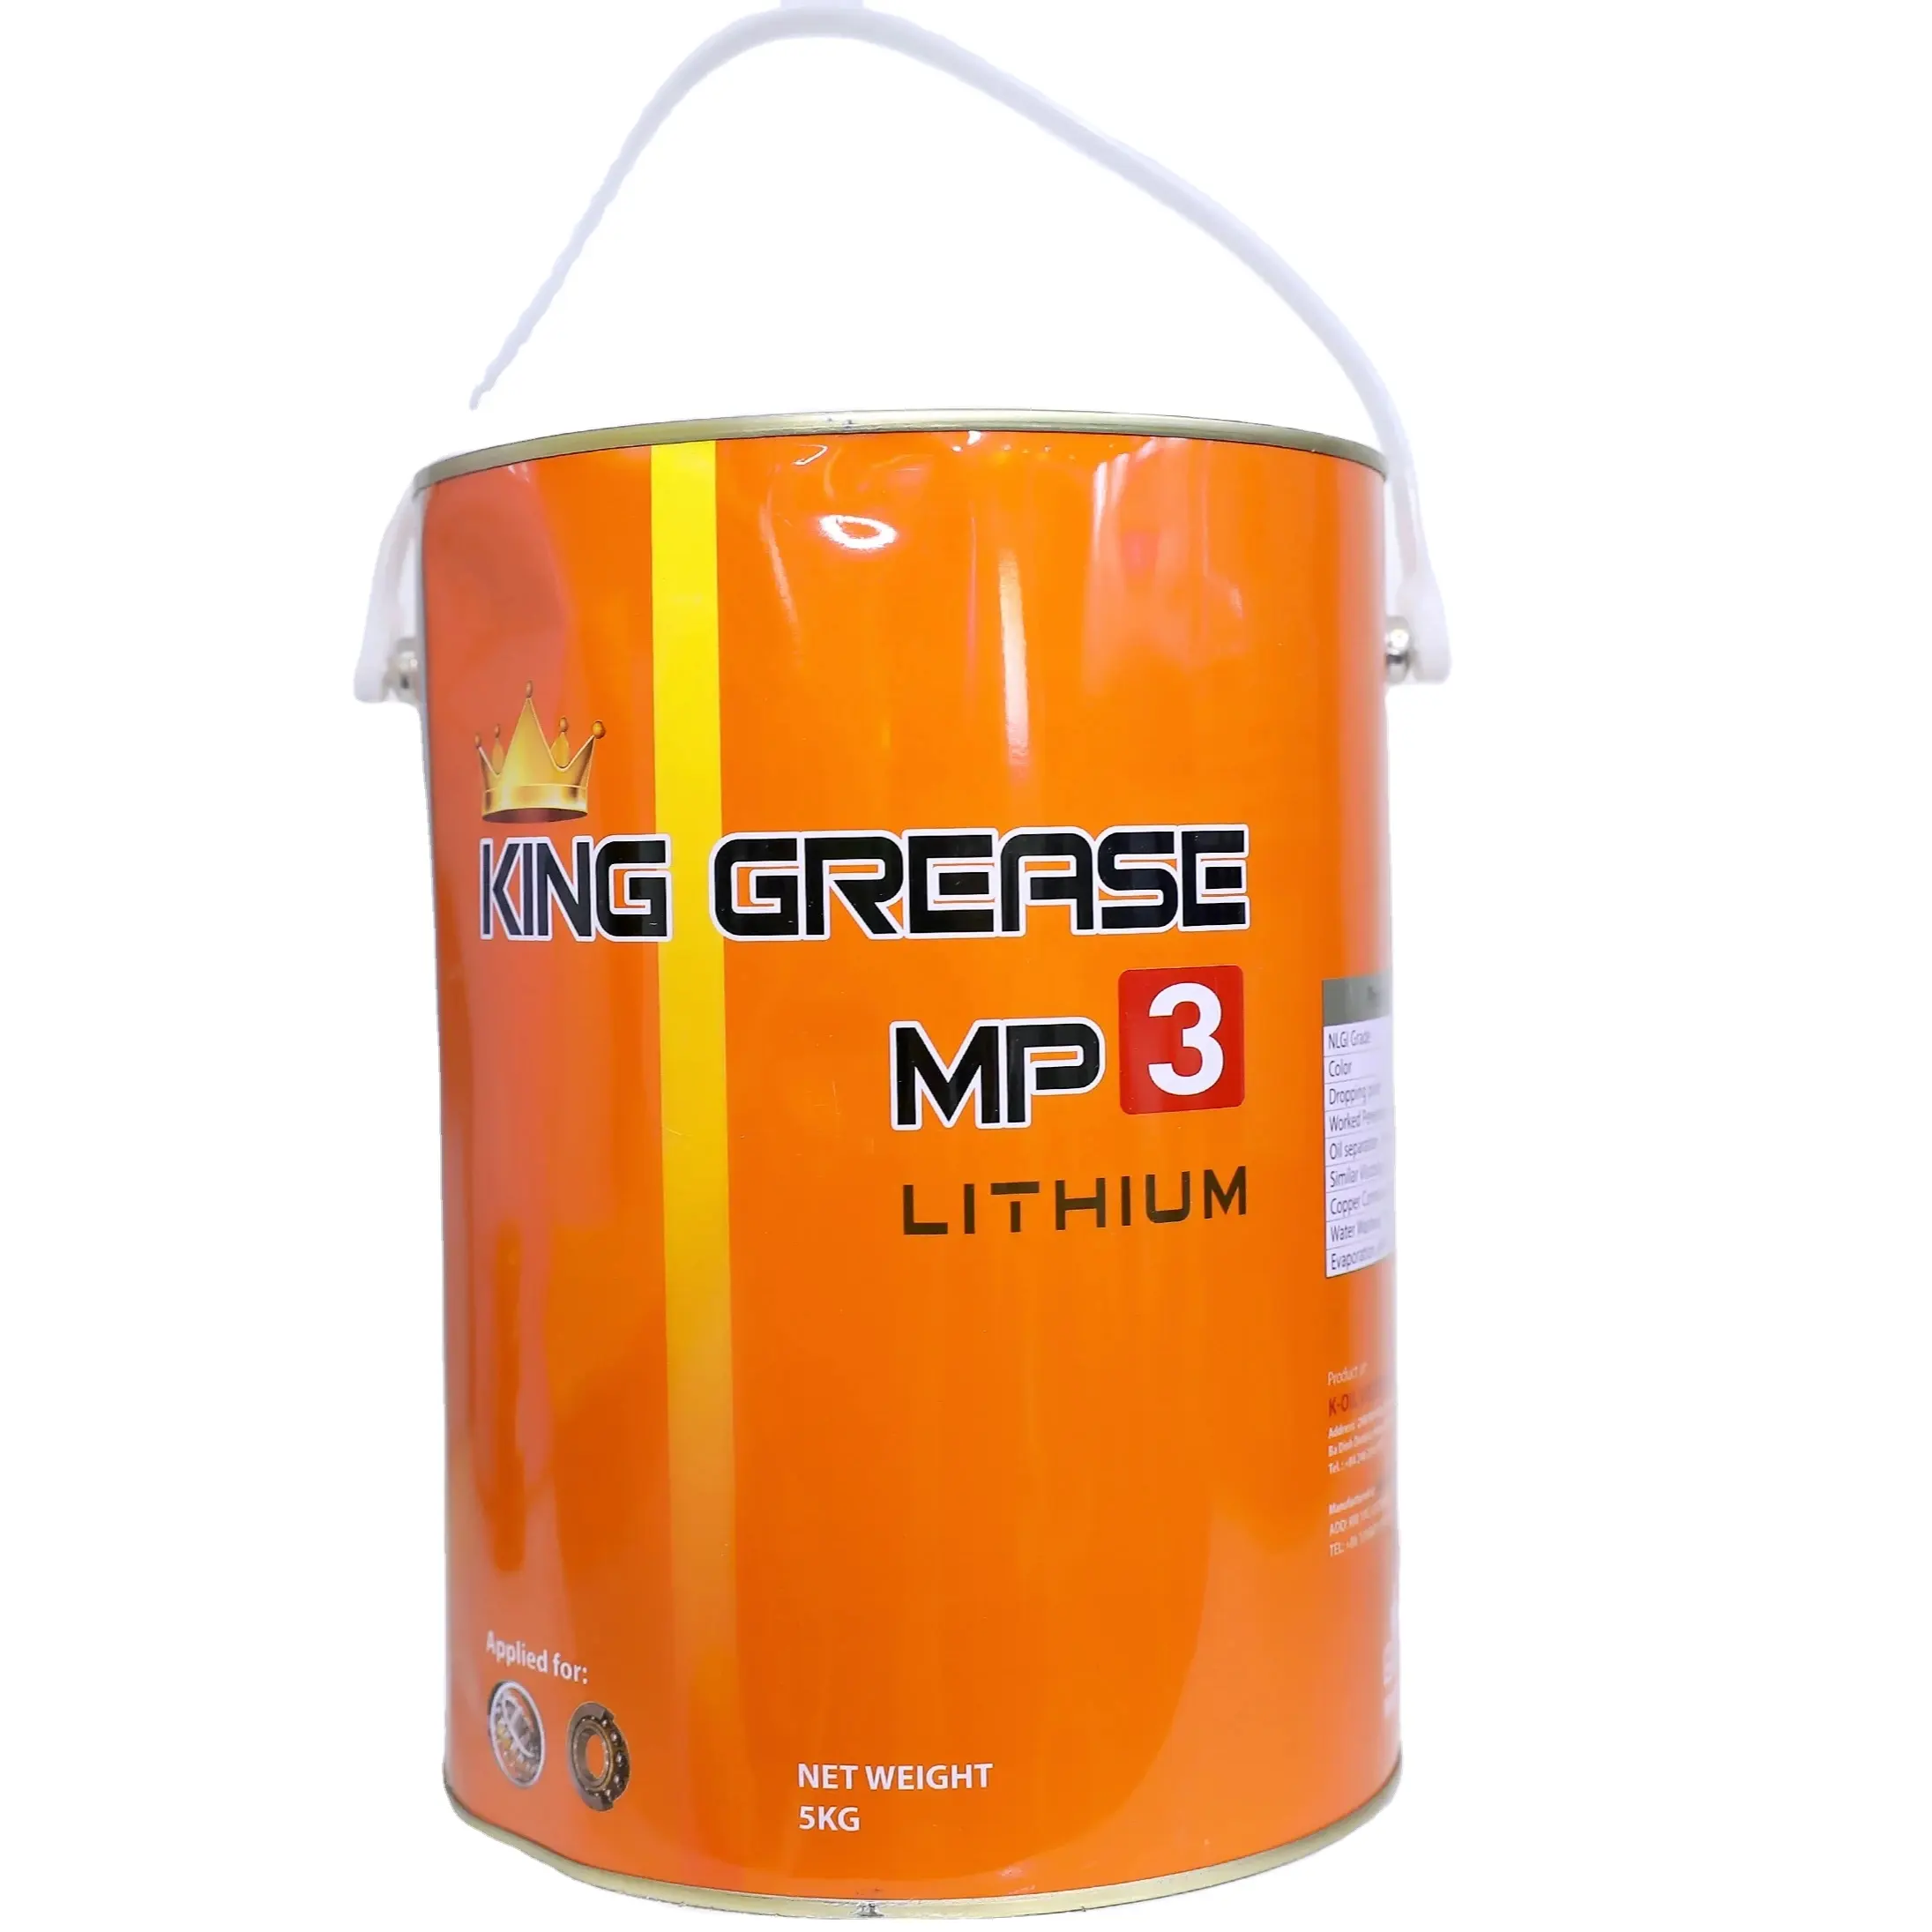 K-OIL Kingvet Lithium Mp3 Gemaakt In Vietnam, Vetvat En Oem Beschikbaar Voor Industriële Machines. Vet Olie